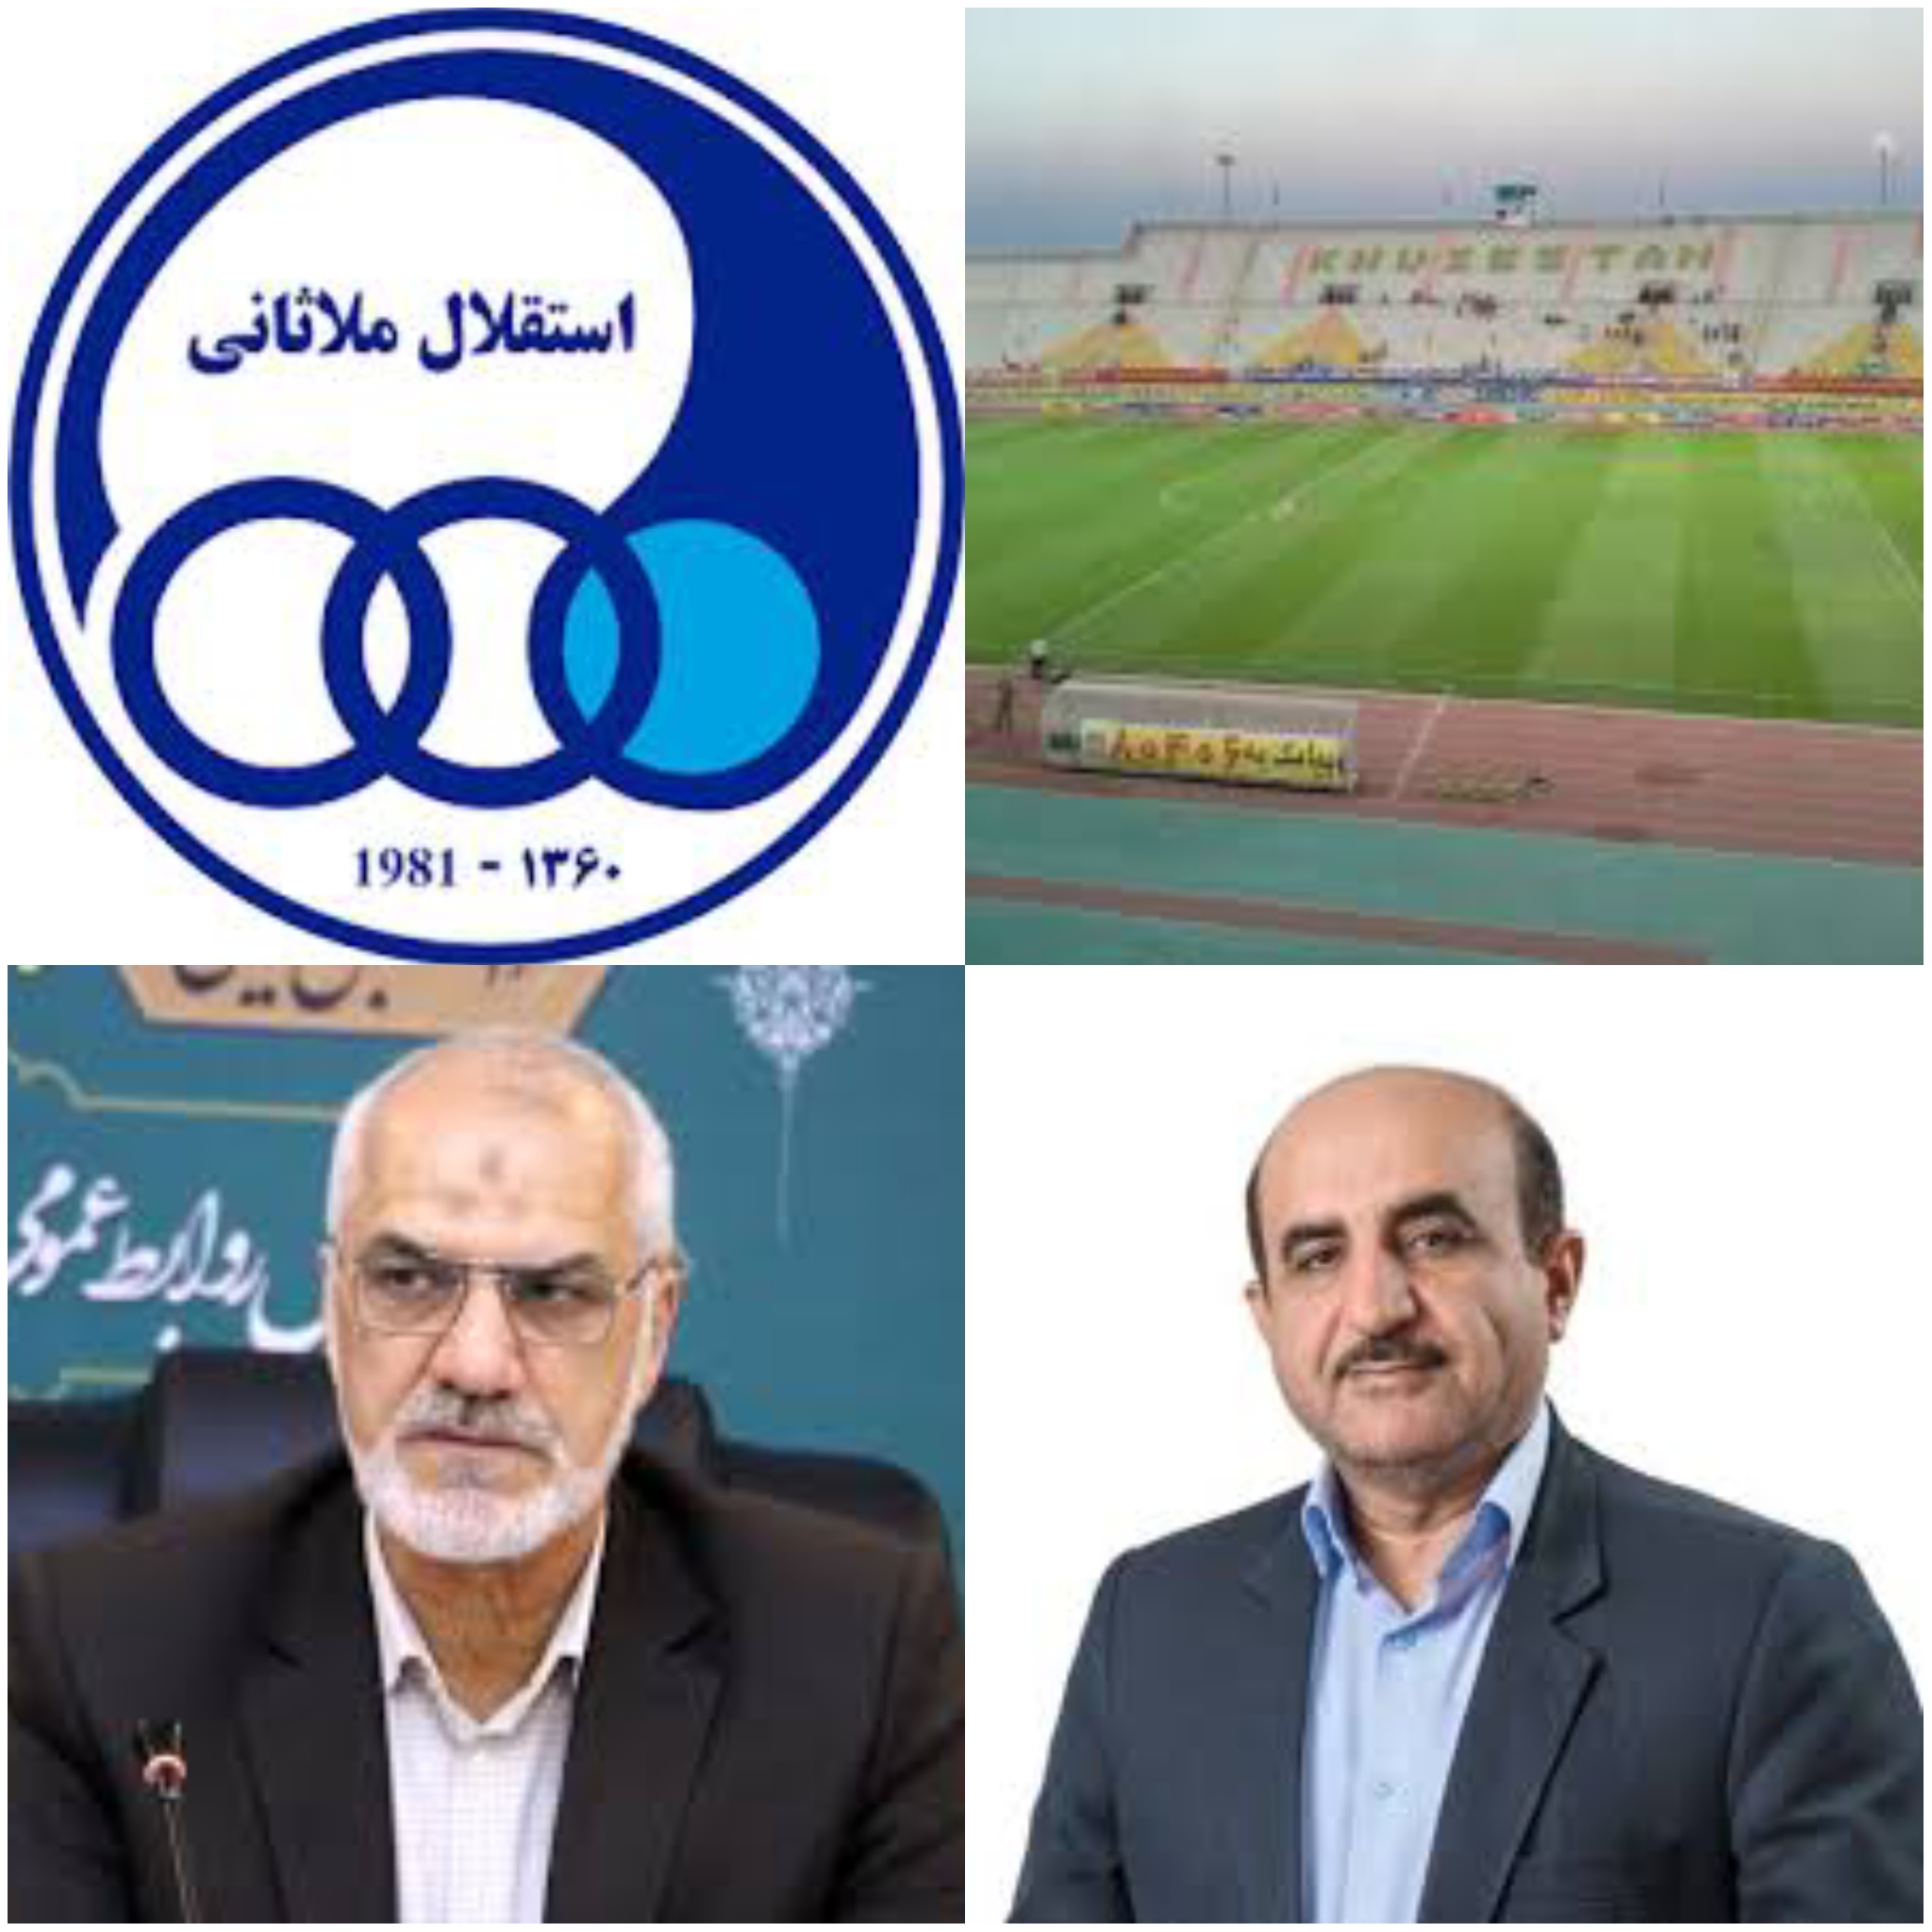 وقتی جناب استاندار قادر به گشودن درب ورزشگاه الغدیر به تنها تیم مردمی فوتبال استان نیست باید به حال خوزستان خون گریست